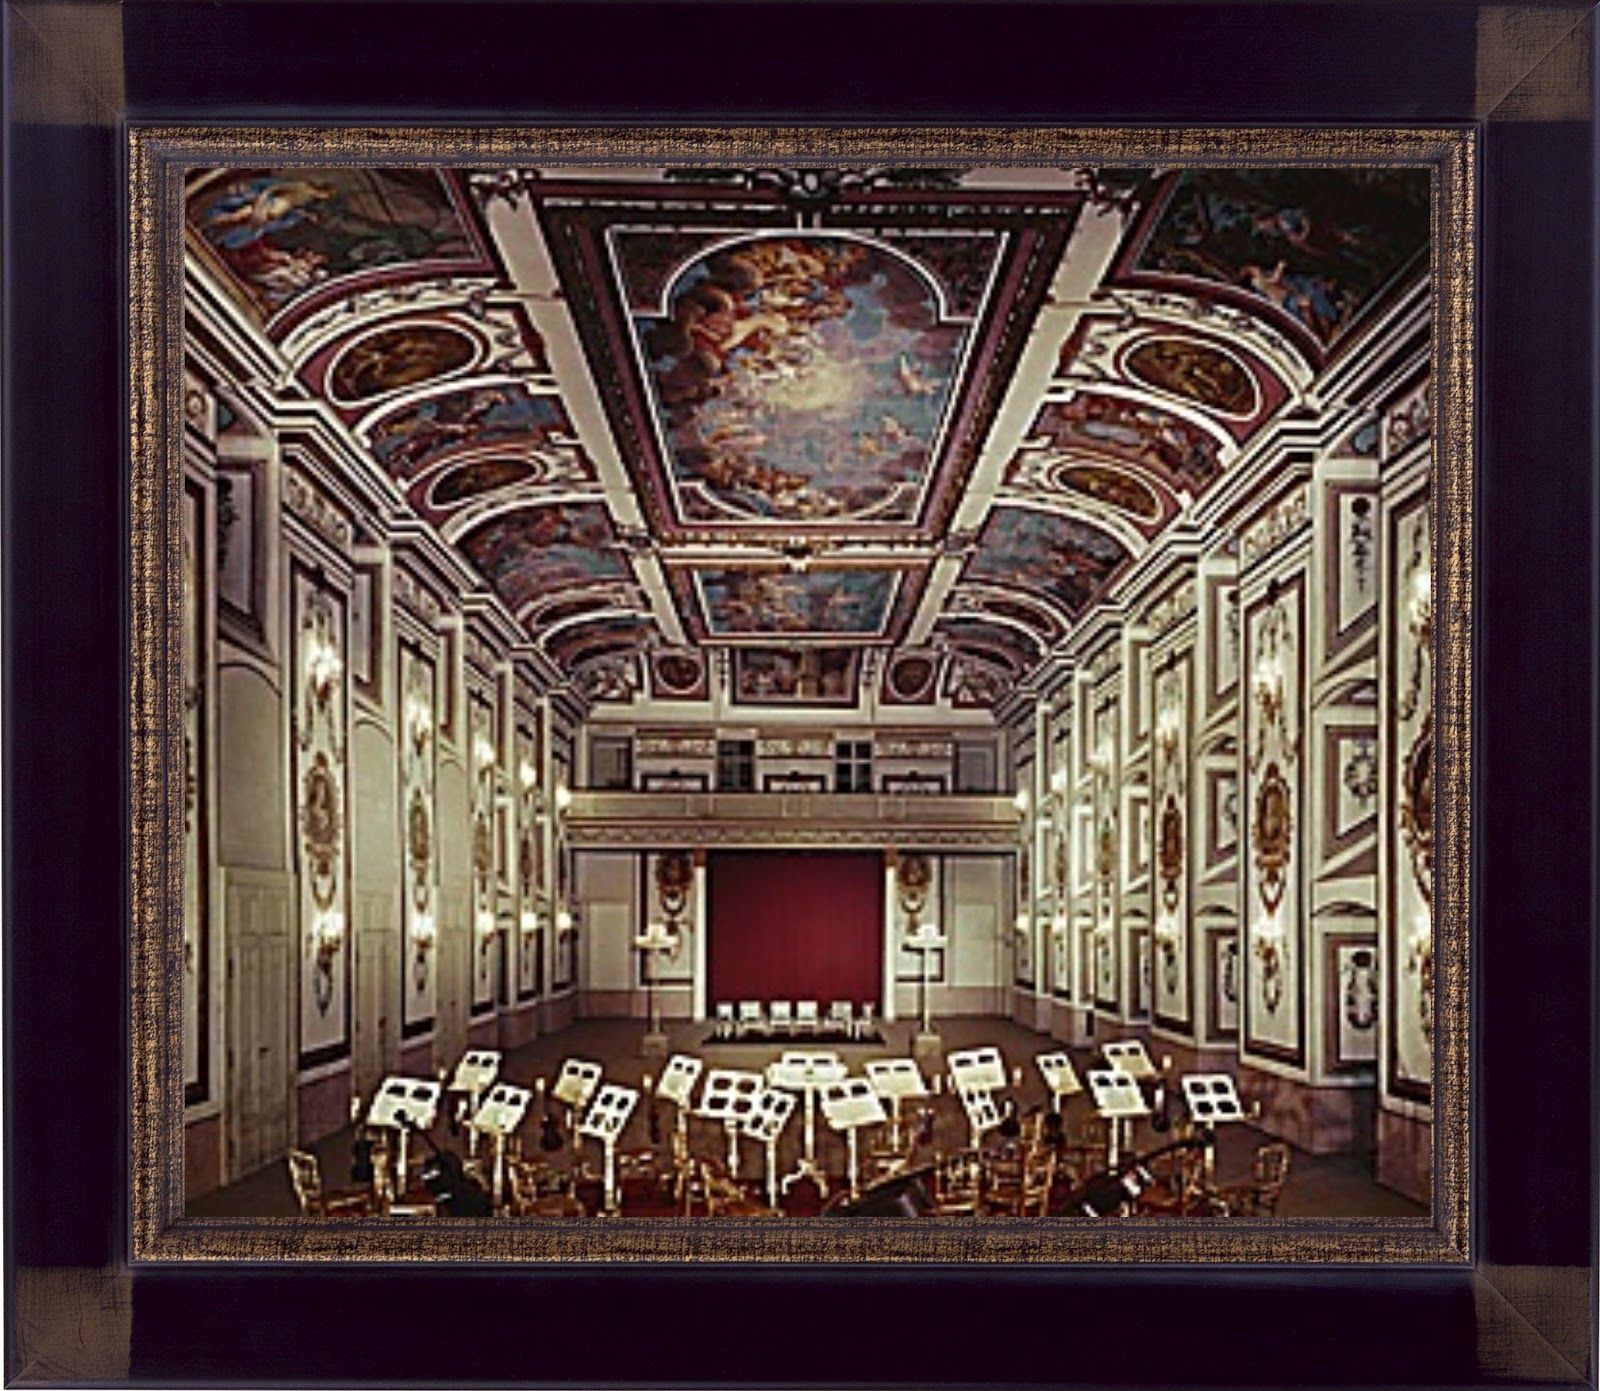 艾斯塔哈西為於艾森斯塔特 (Eisenstadt) 的宮殿，有龐大的音樂廳以供演出。現在這音樂廳保留着以往的瑰麗與氣派，並被命名為「海頓音樂廳」(Haydnsaal)。